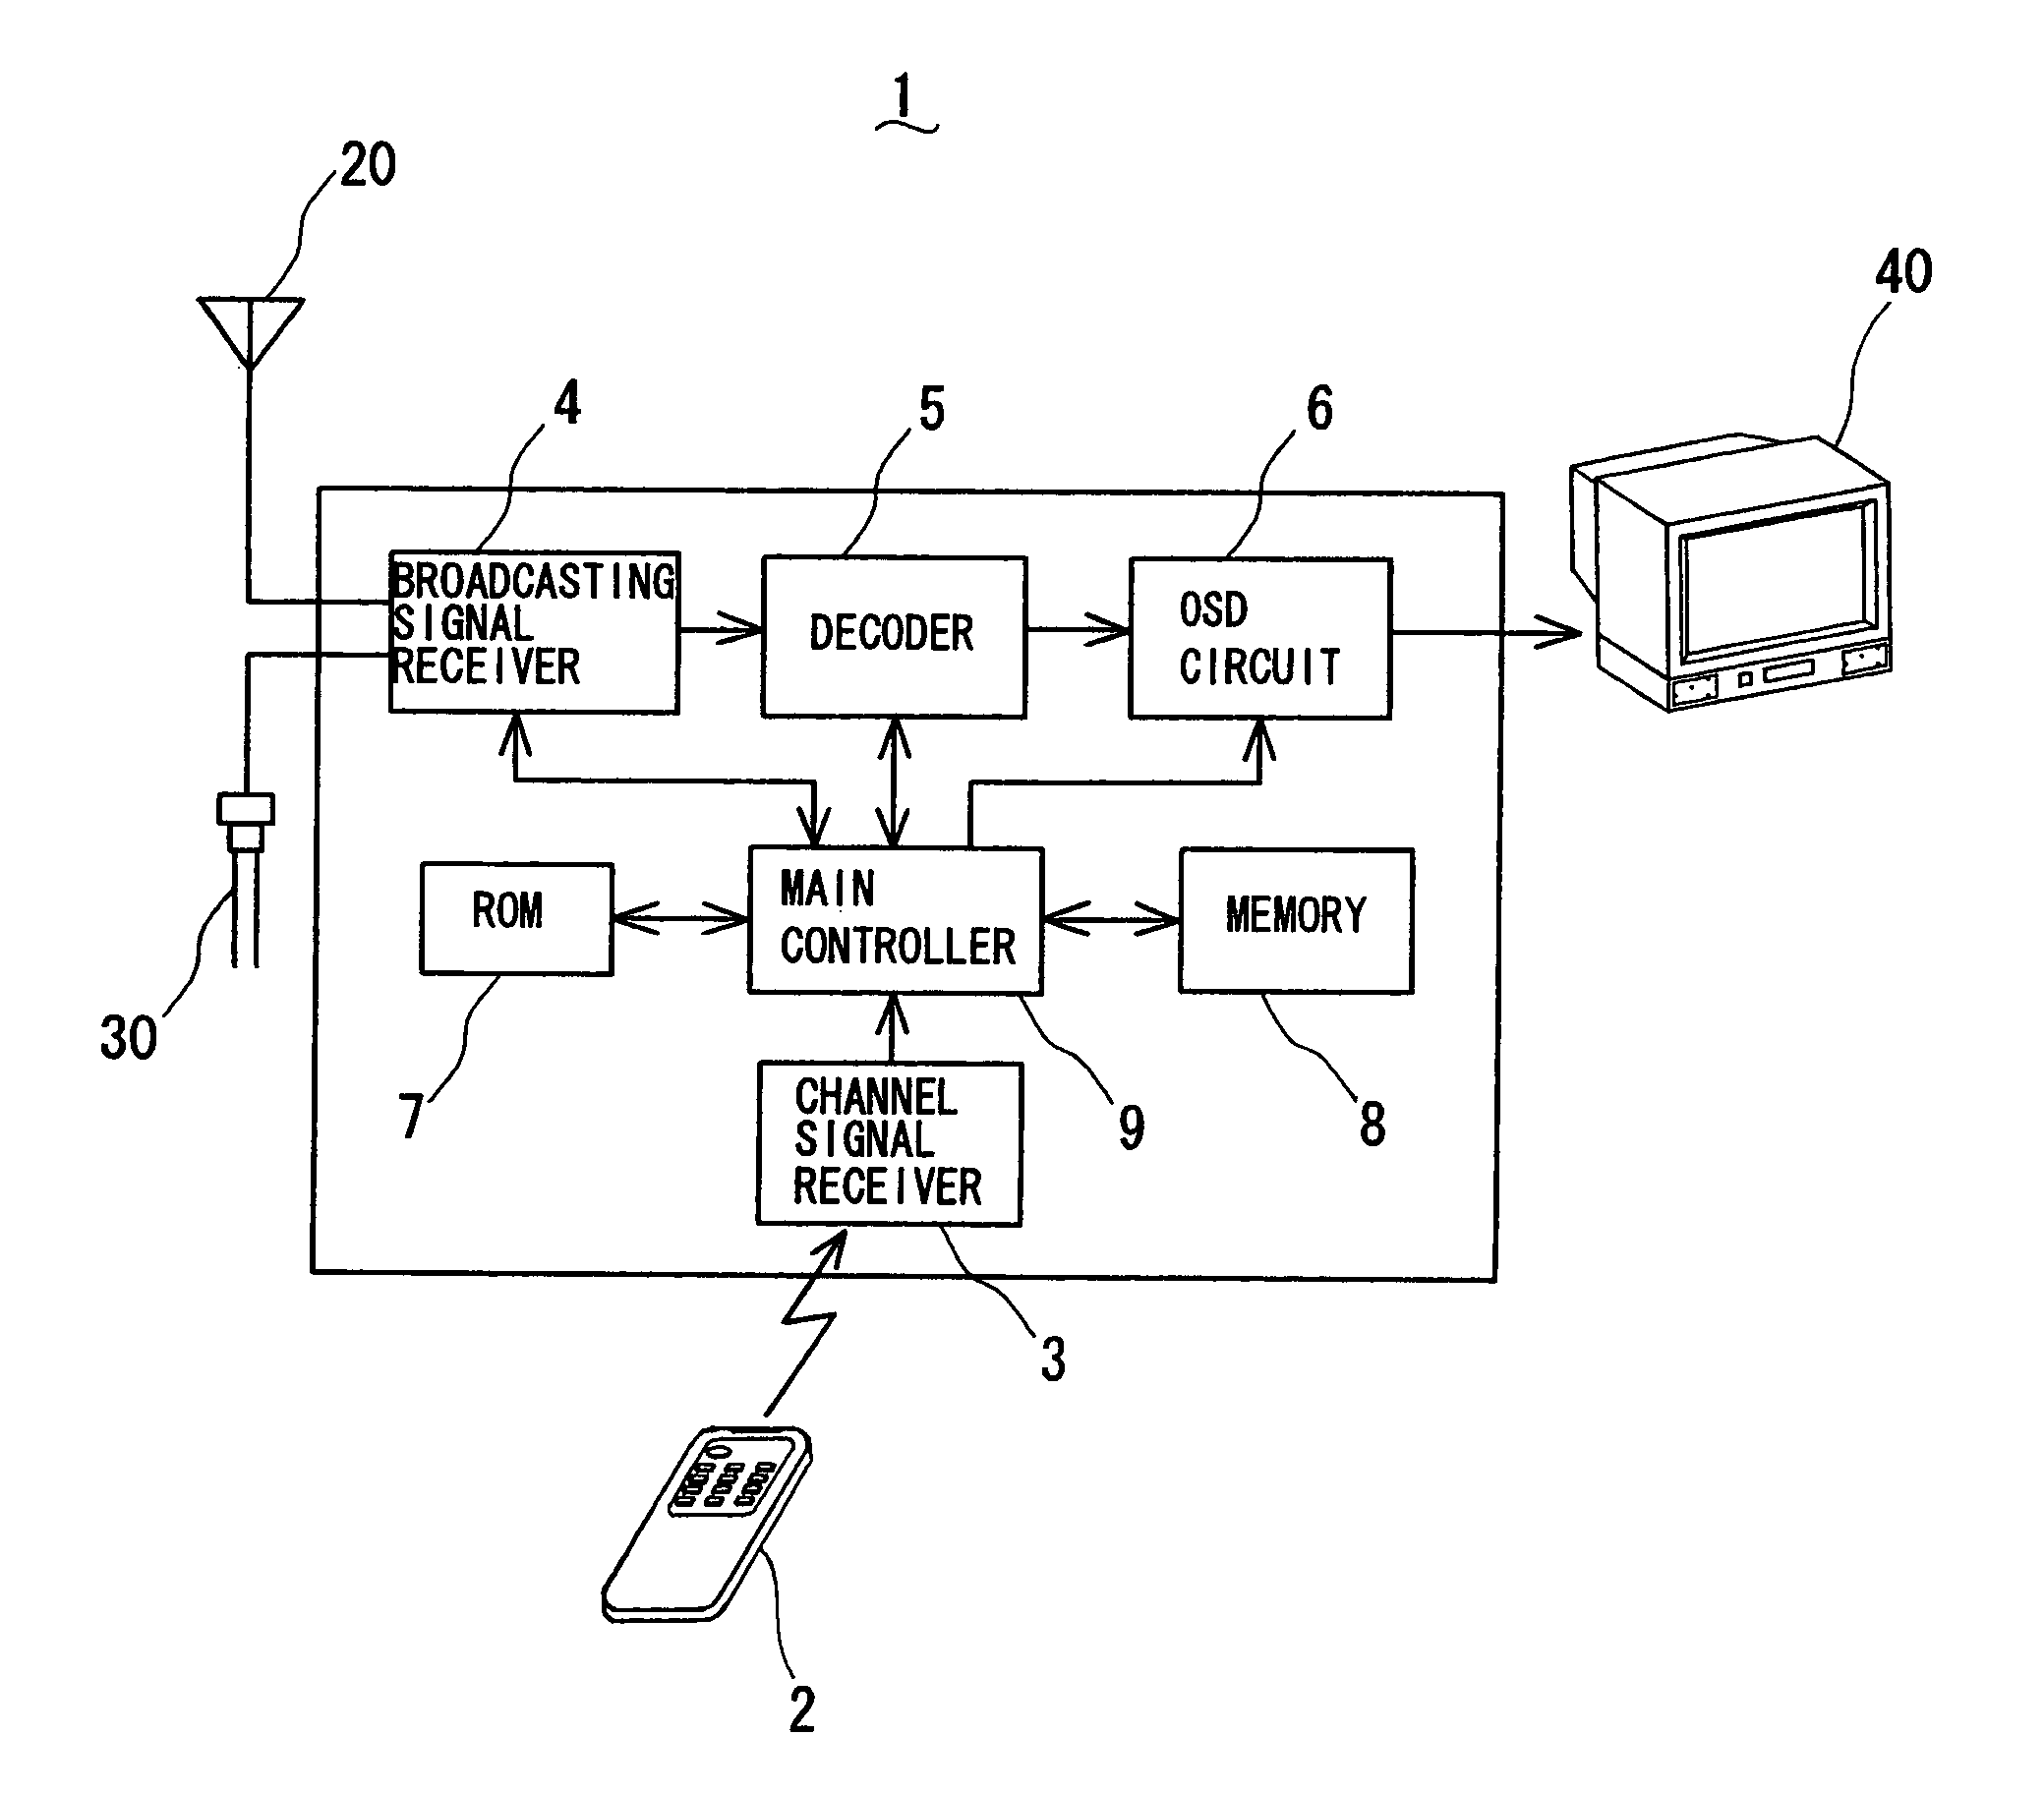 Digital/analog TV receiver